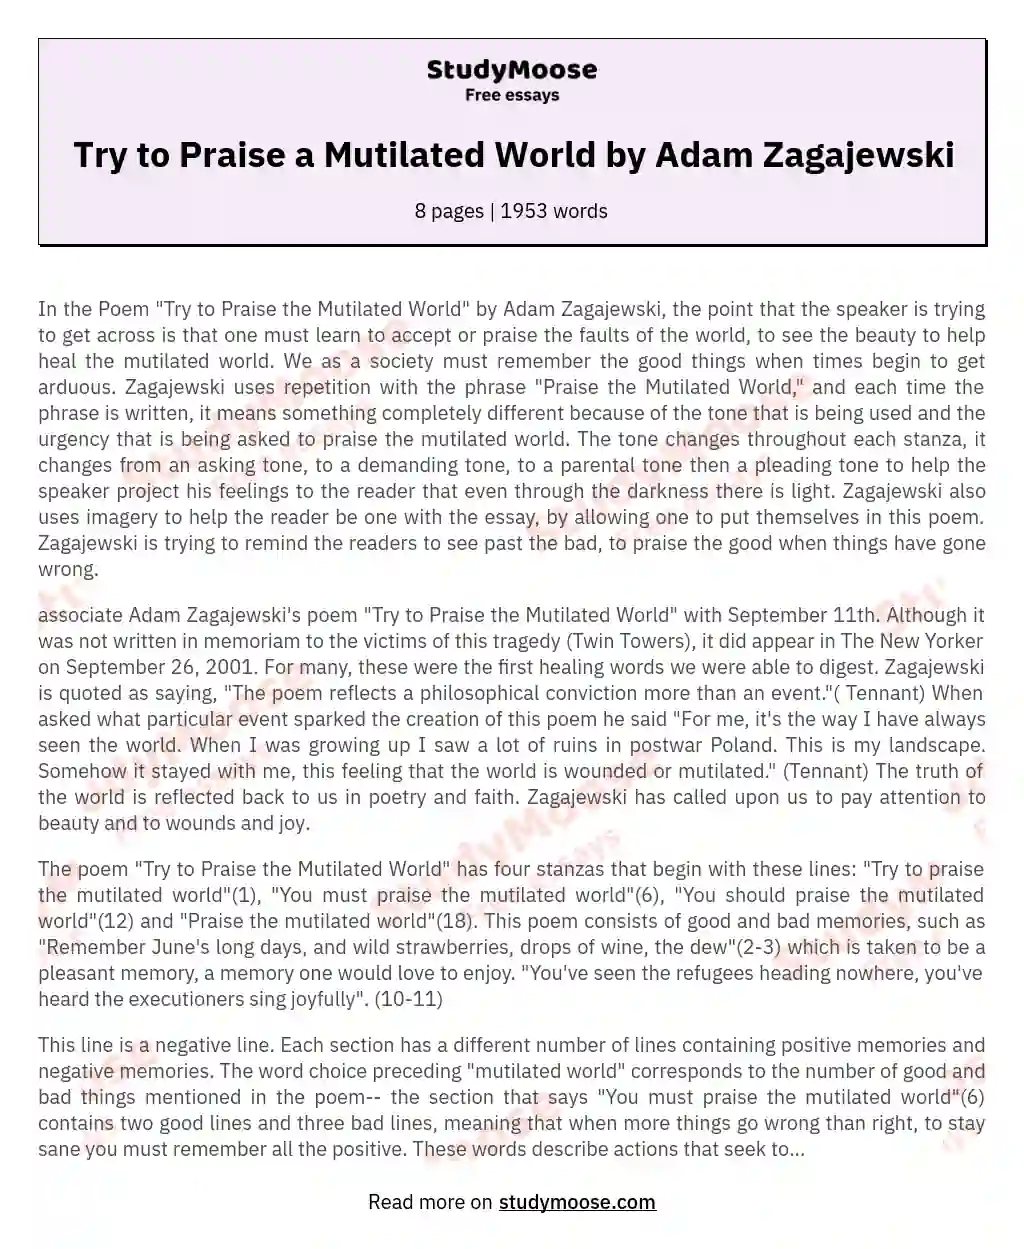 Try to Praise a Mutilated World by Adam Zagajewski essay